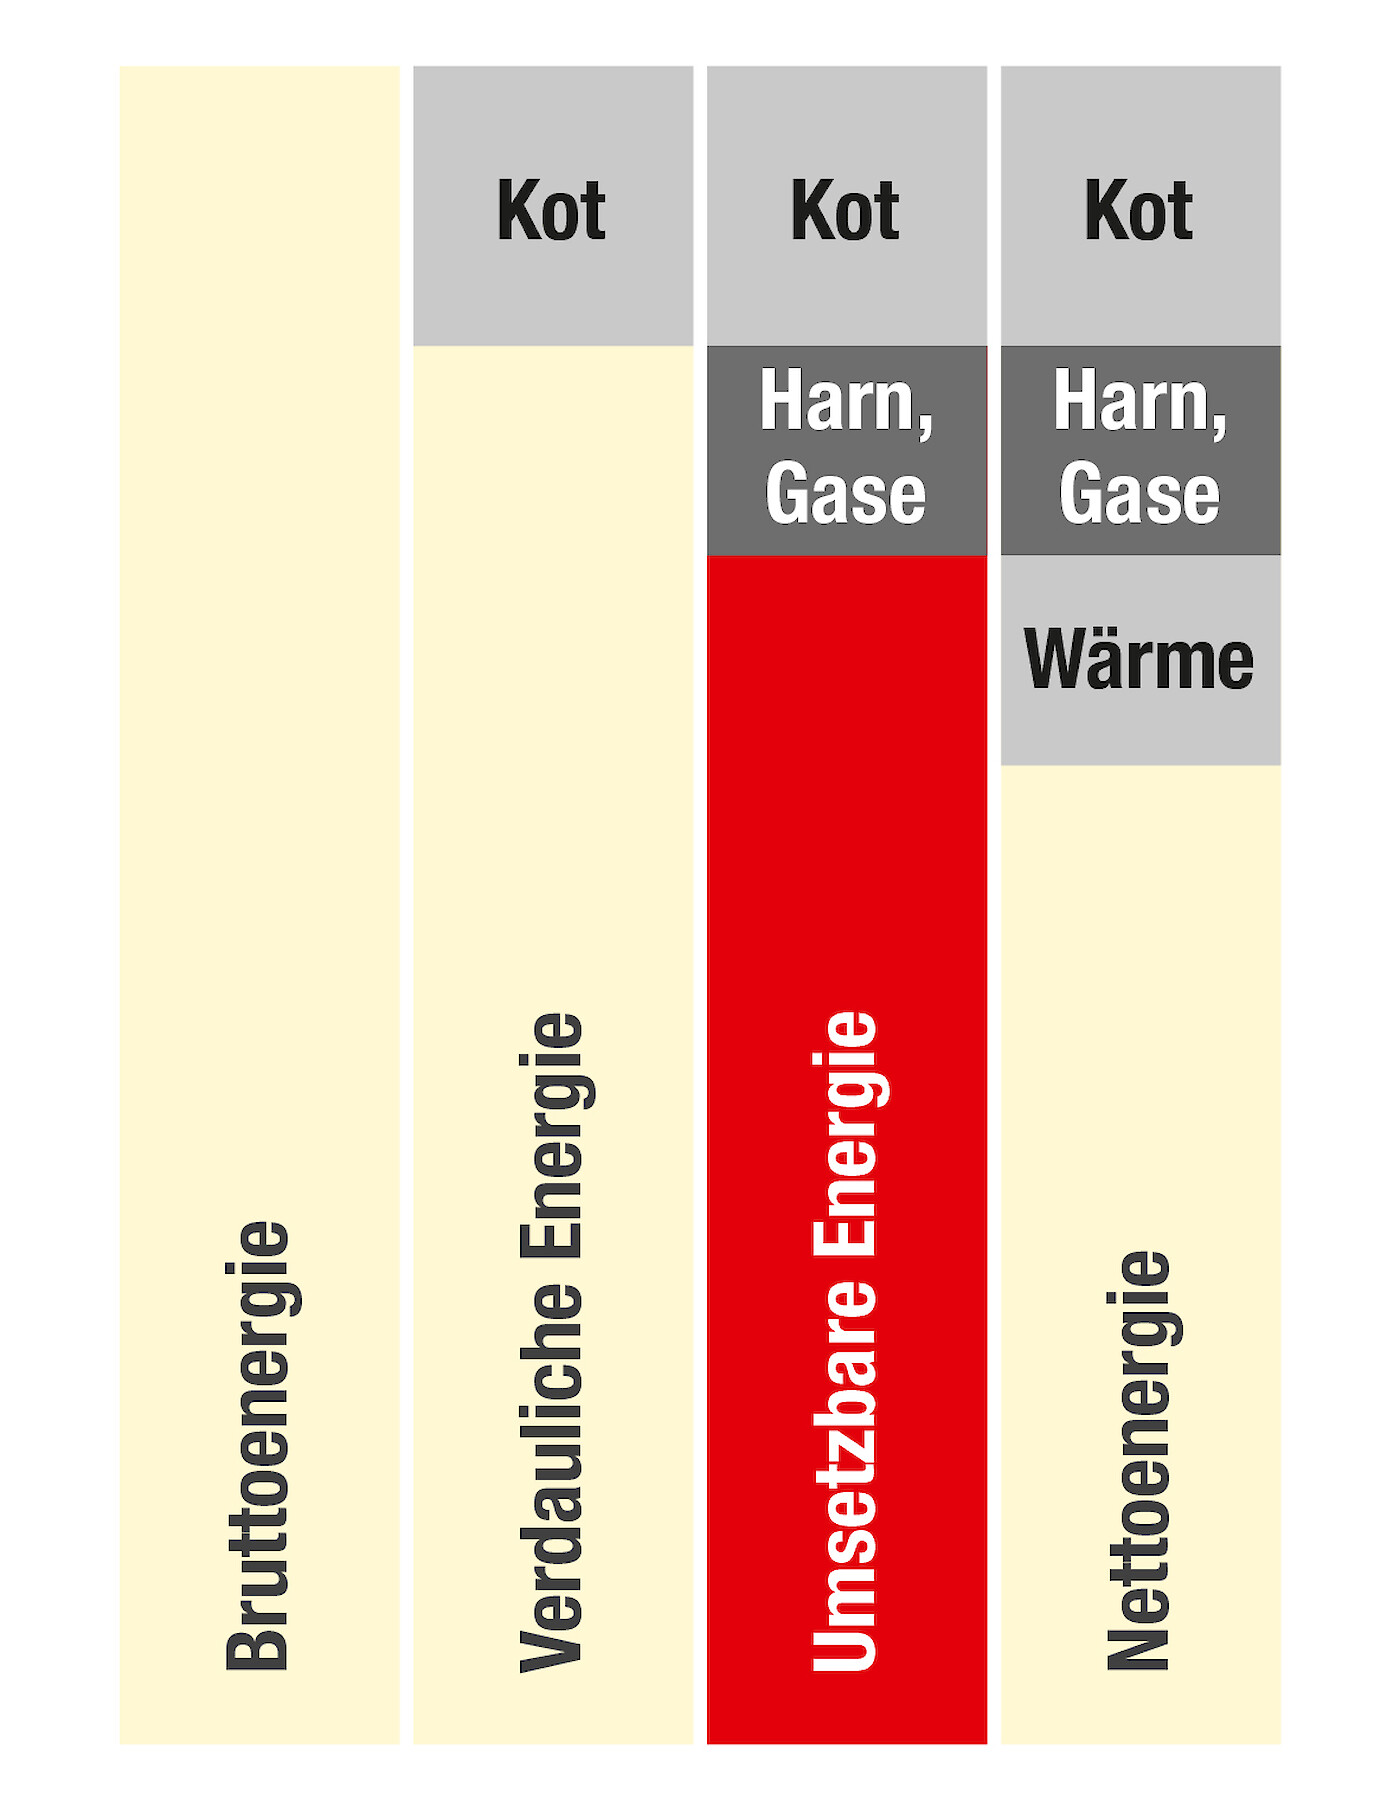 Grafische Darstellung umsetzbare Energie im Vergleich zu anderen Energiebewertungssystemen in der Schweinemast (© Deutsche Tiernahrung Cremer).